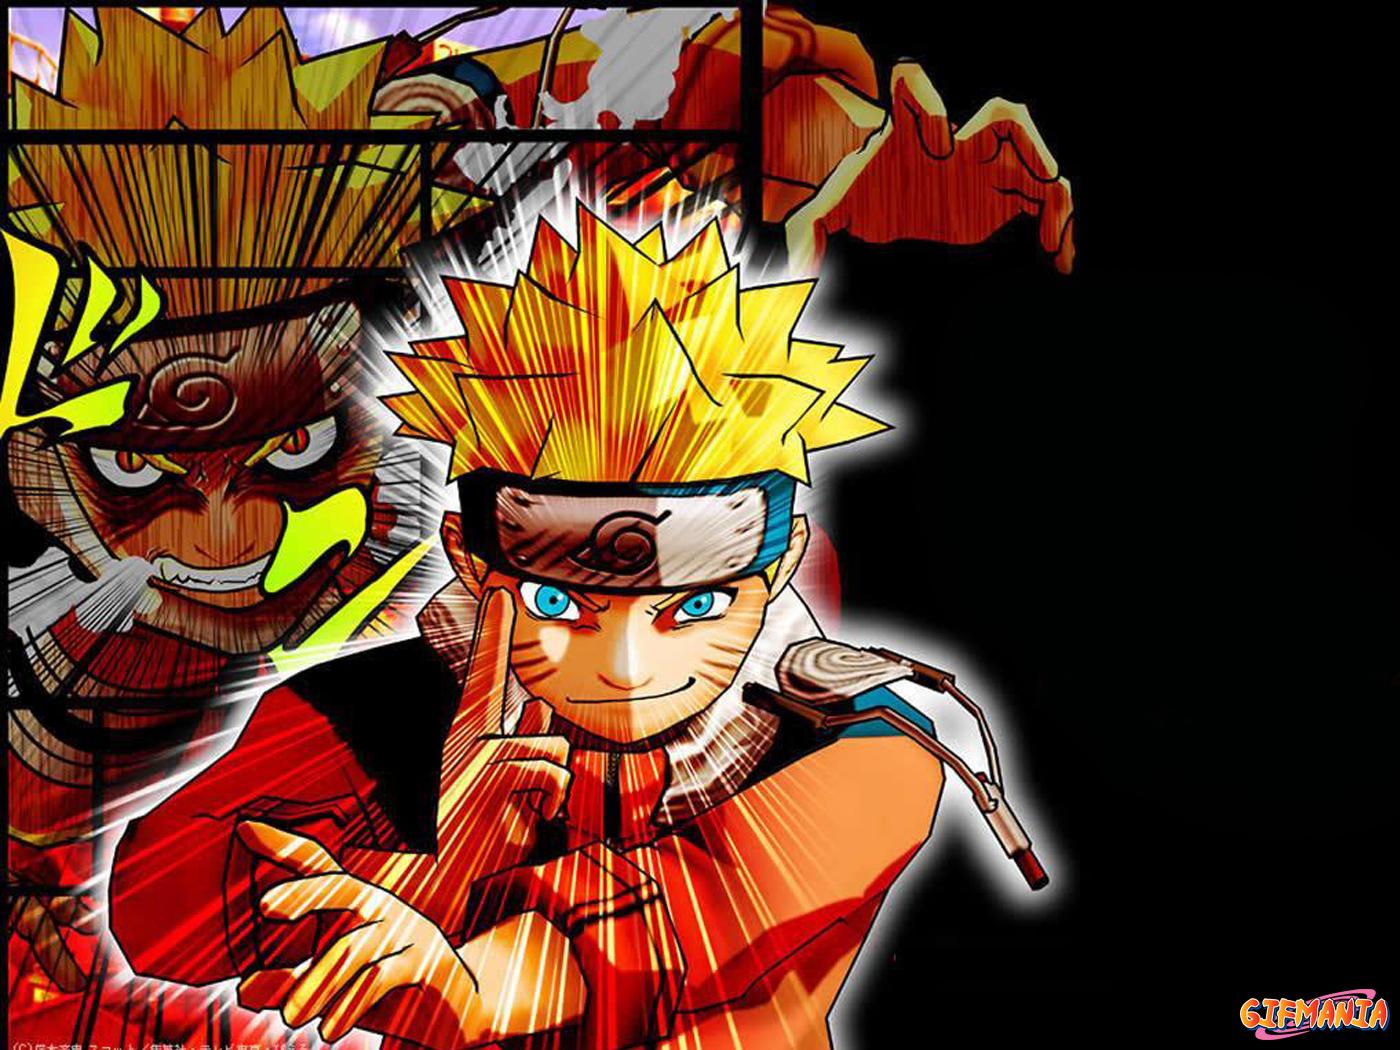 Naruto Episodes 9 Anime Wallpaper Wallpaper Shonen Jump